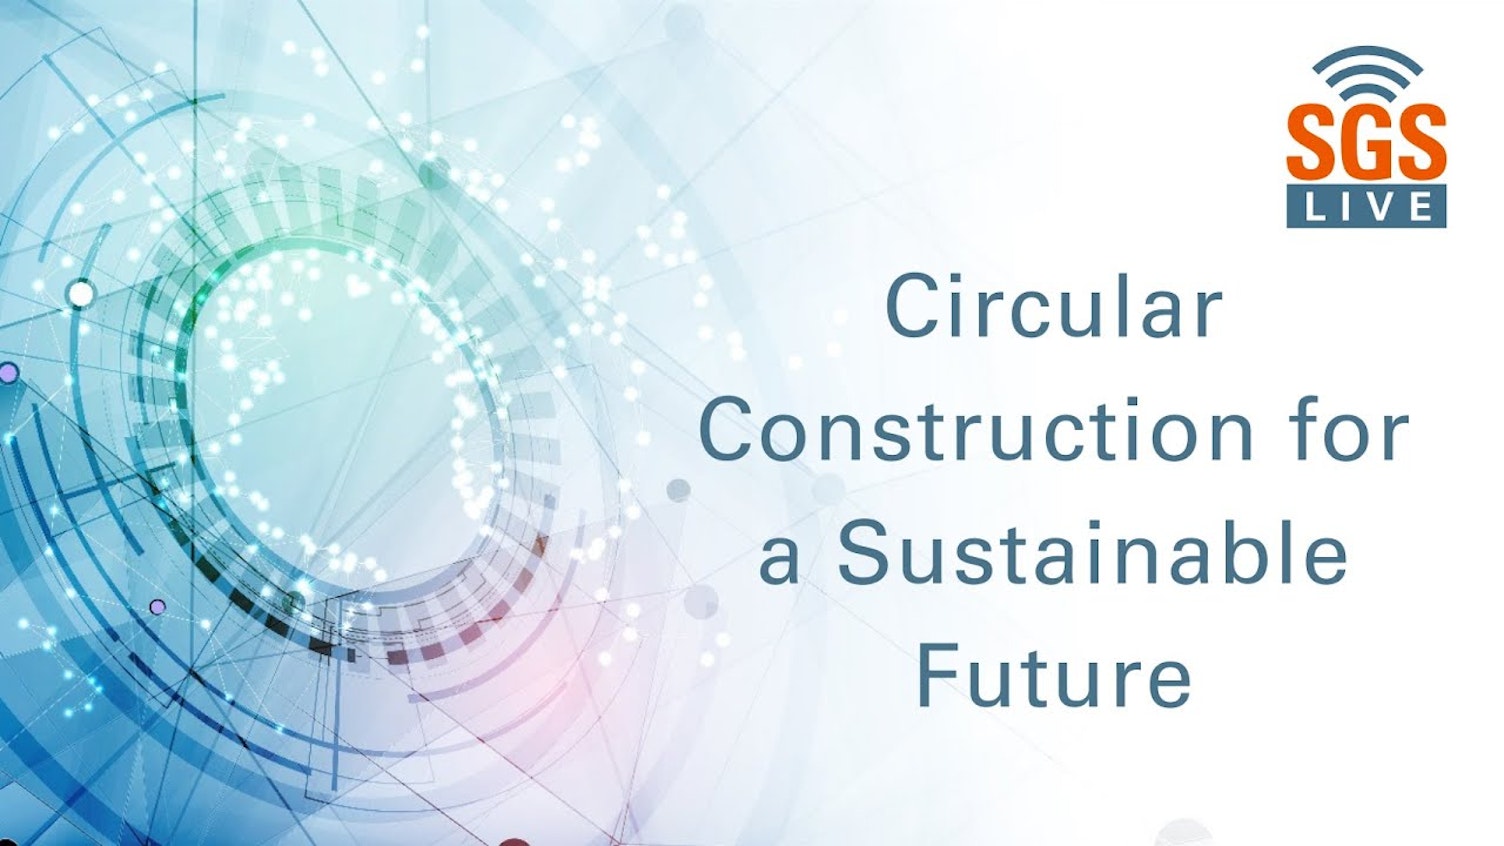 持続可能な未来のための循環型構造